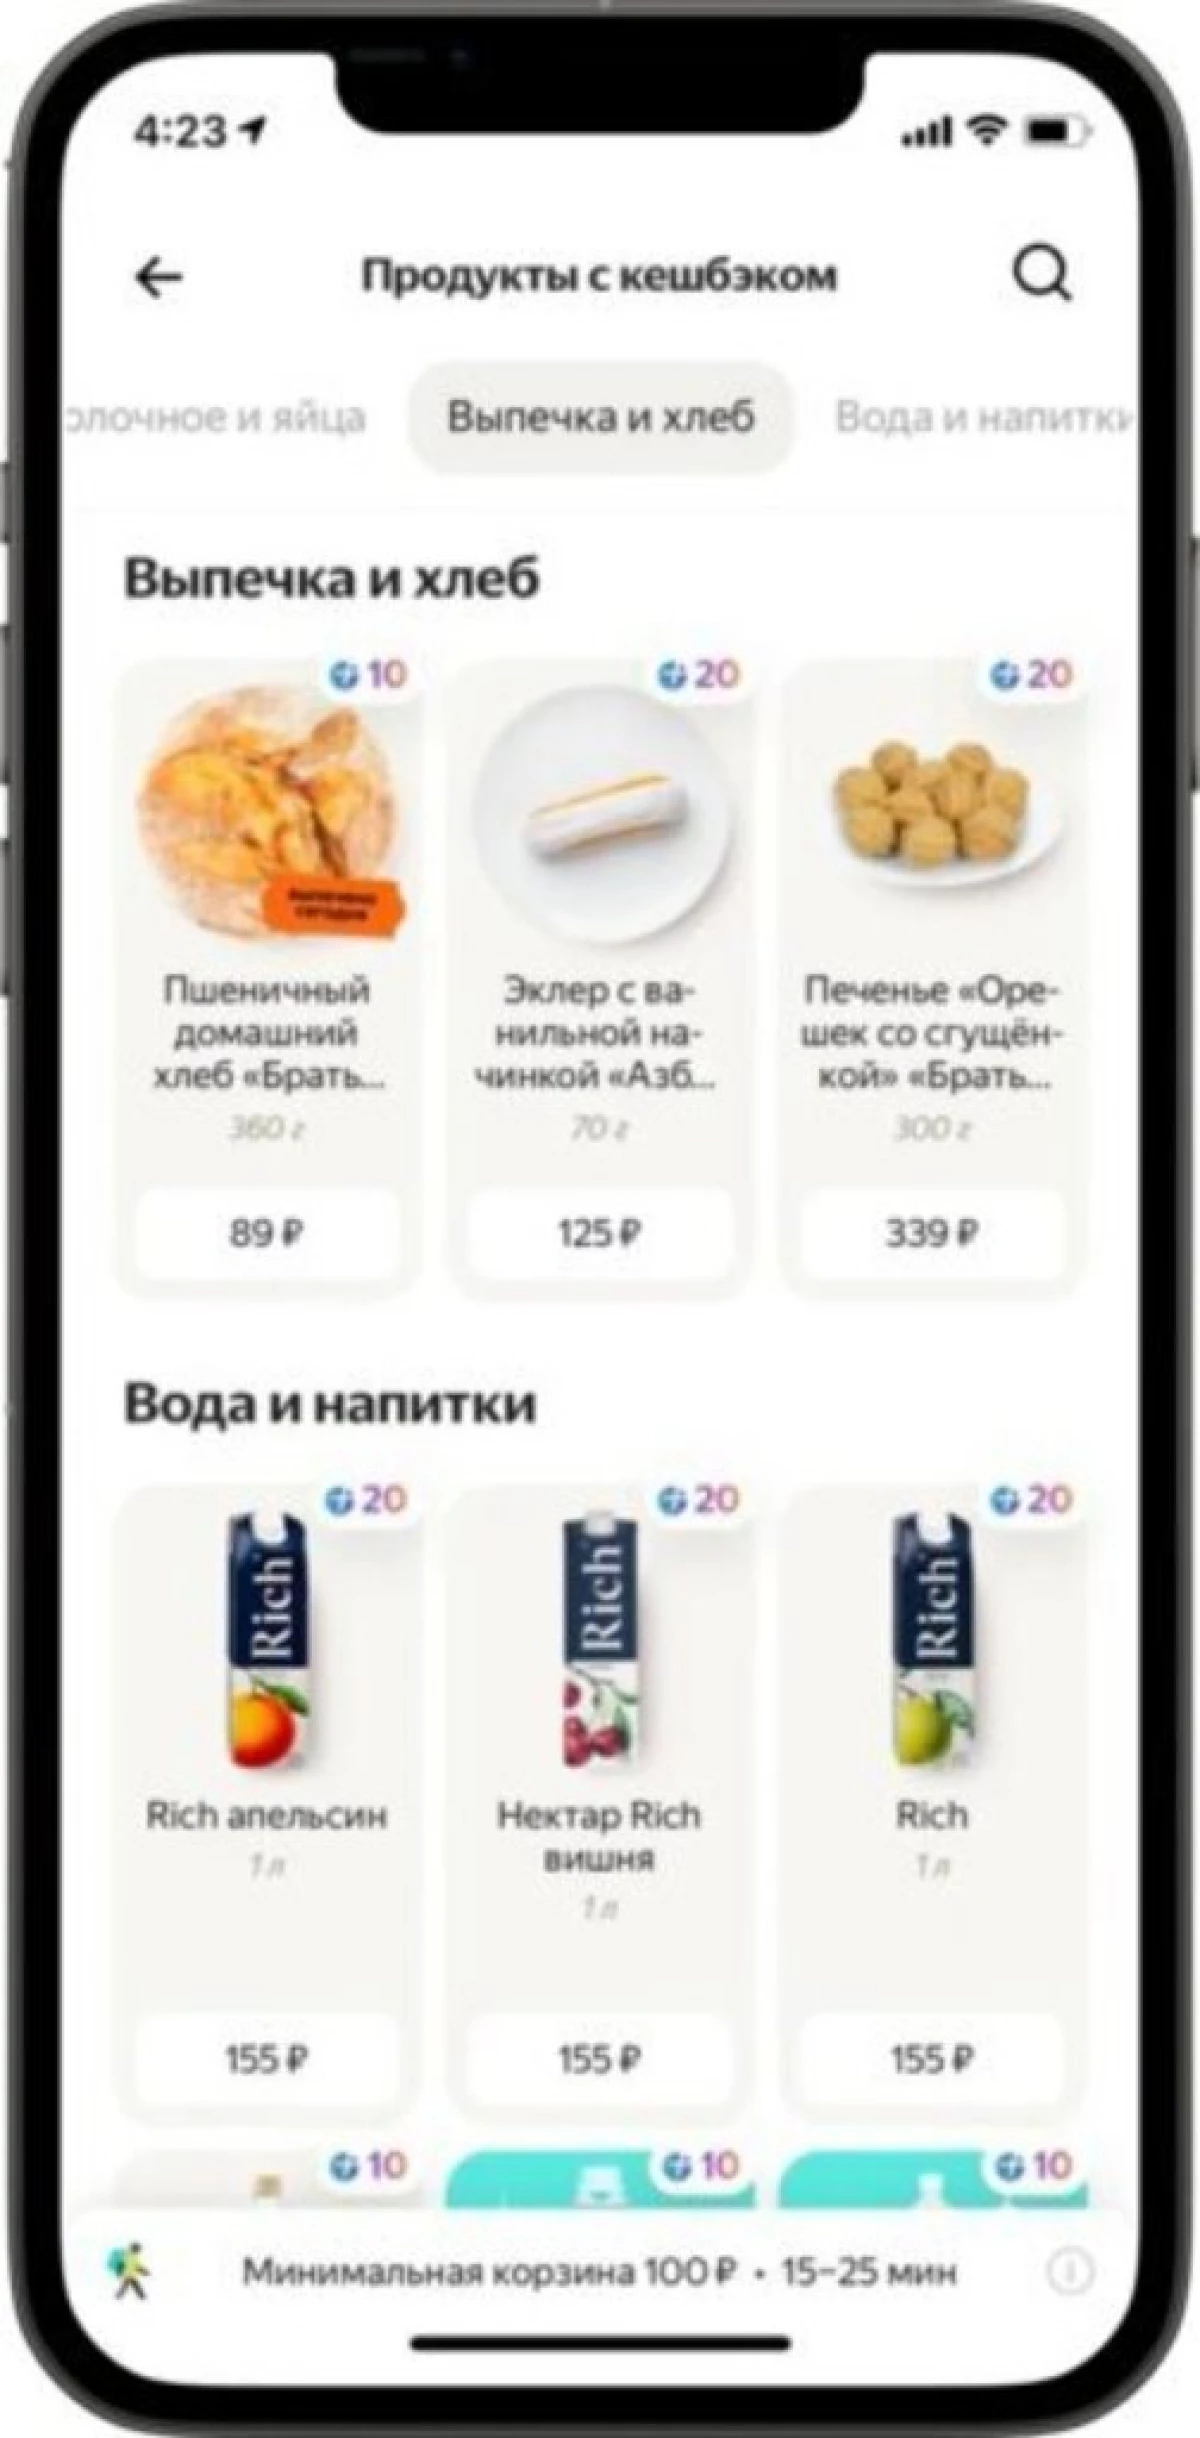 Yandex diizinkan menerima dan menghabiskan poin 